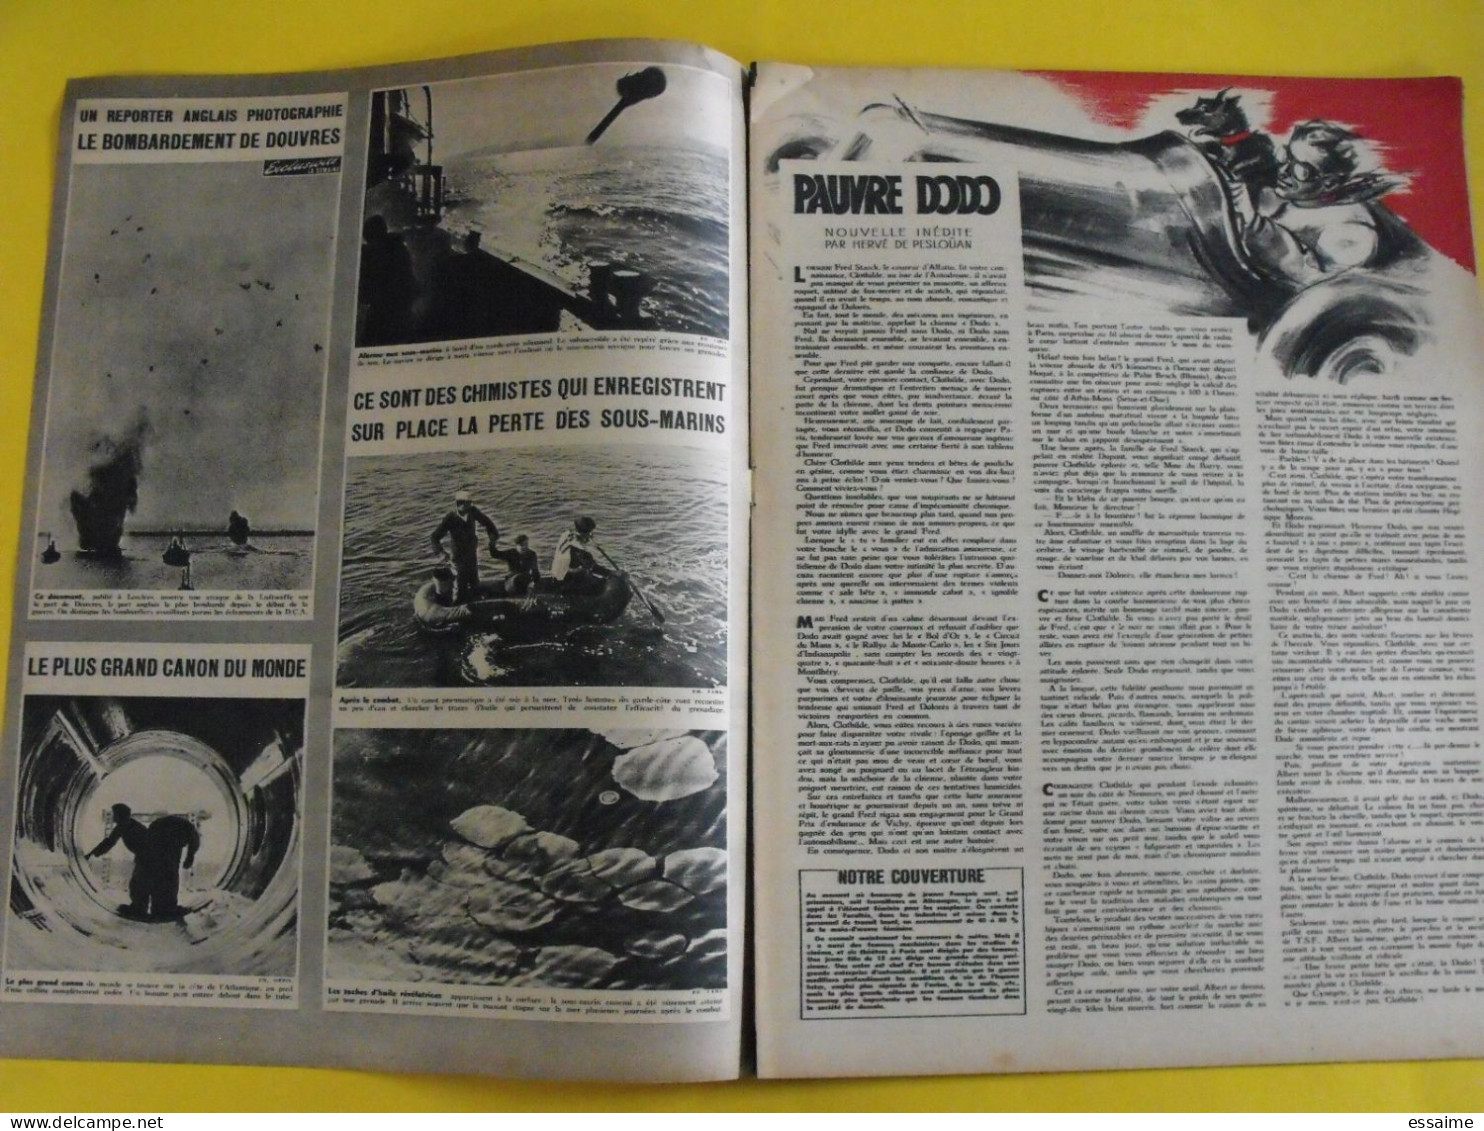 6 revues La semaine de 1943. actualités guerre photos collaboration cécile agnel micheline presle vlassov japon jersey